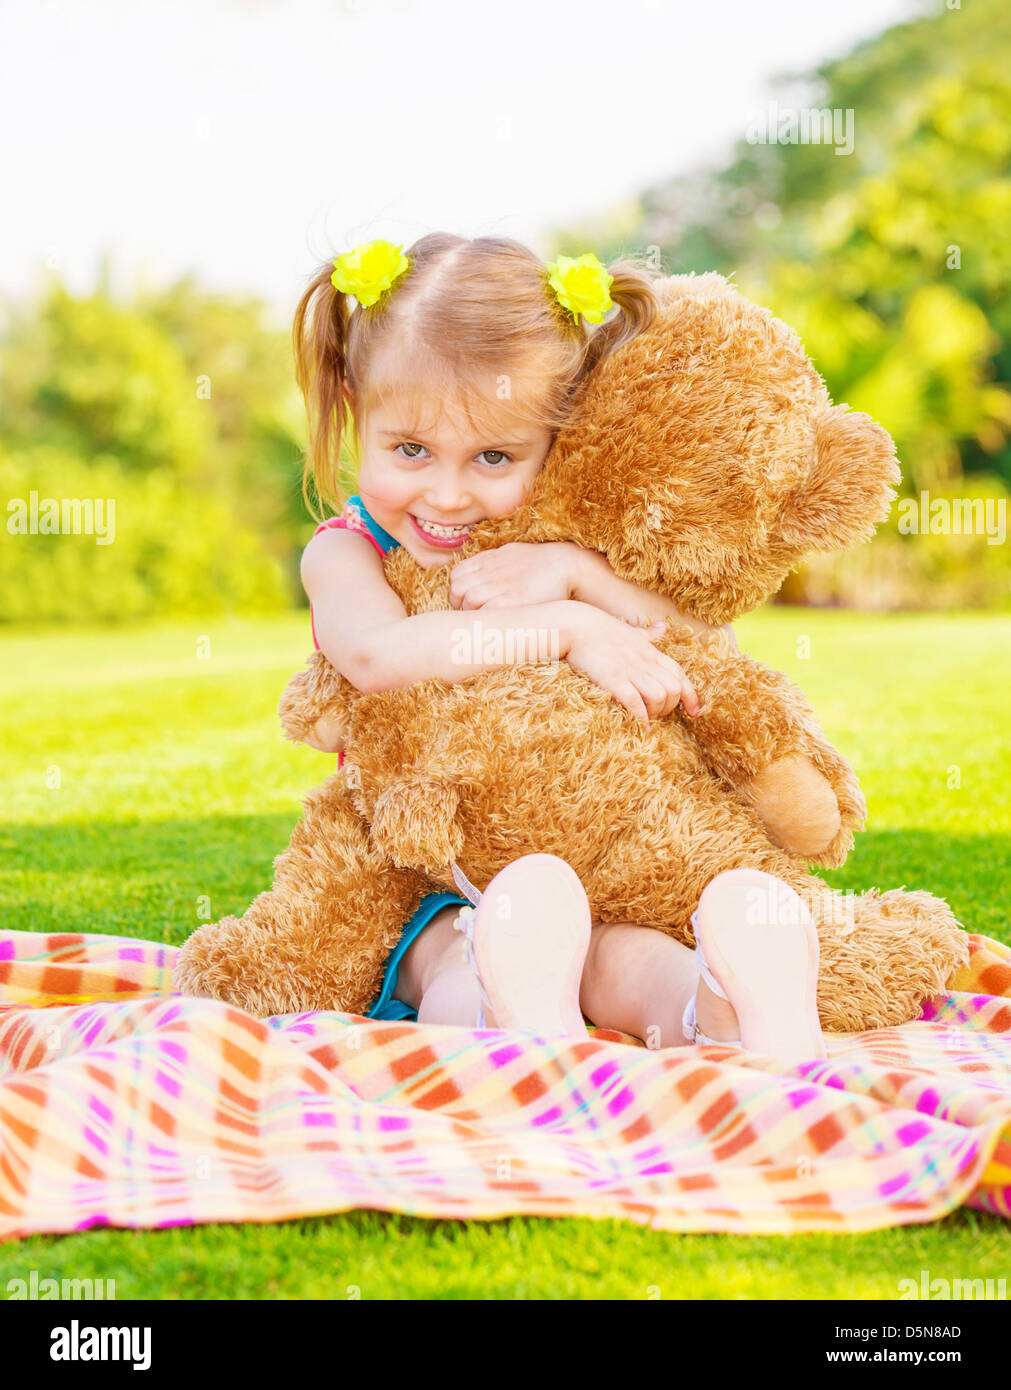 cute little girl with teddy bear